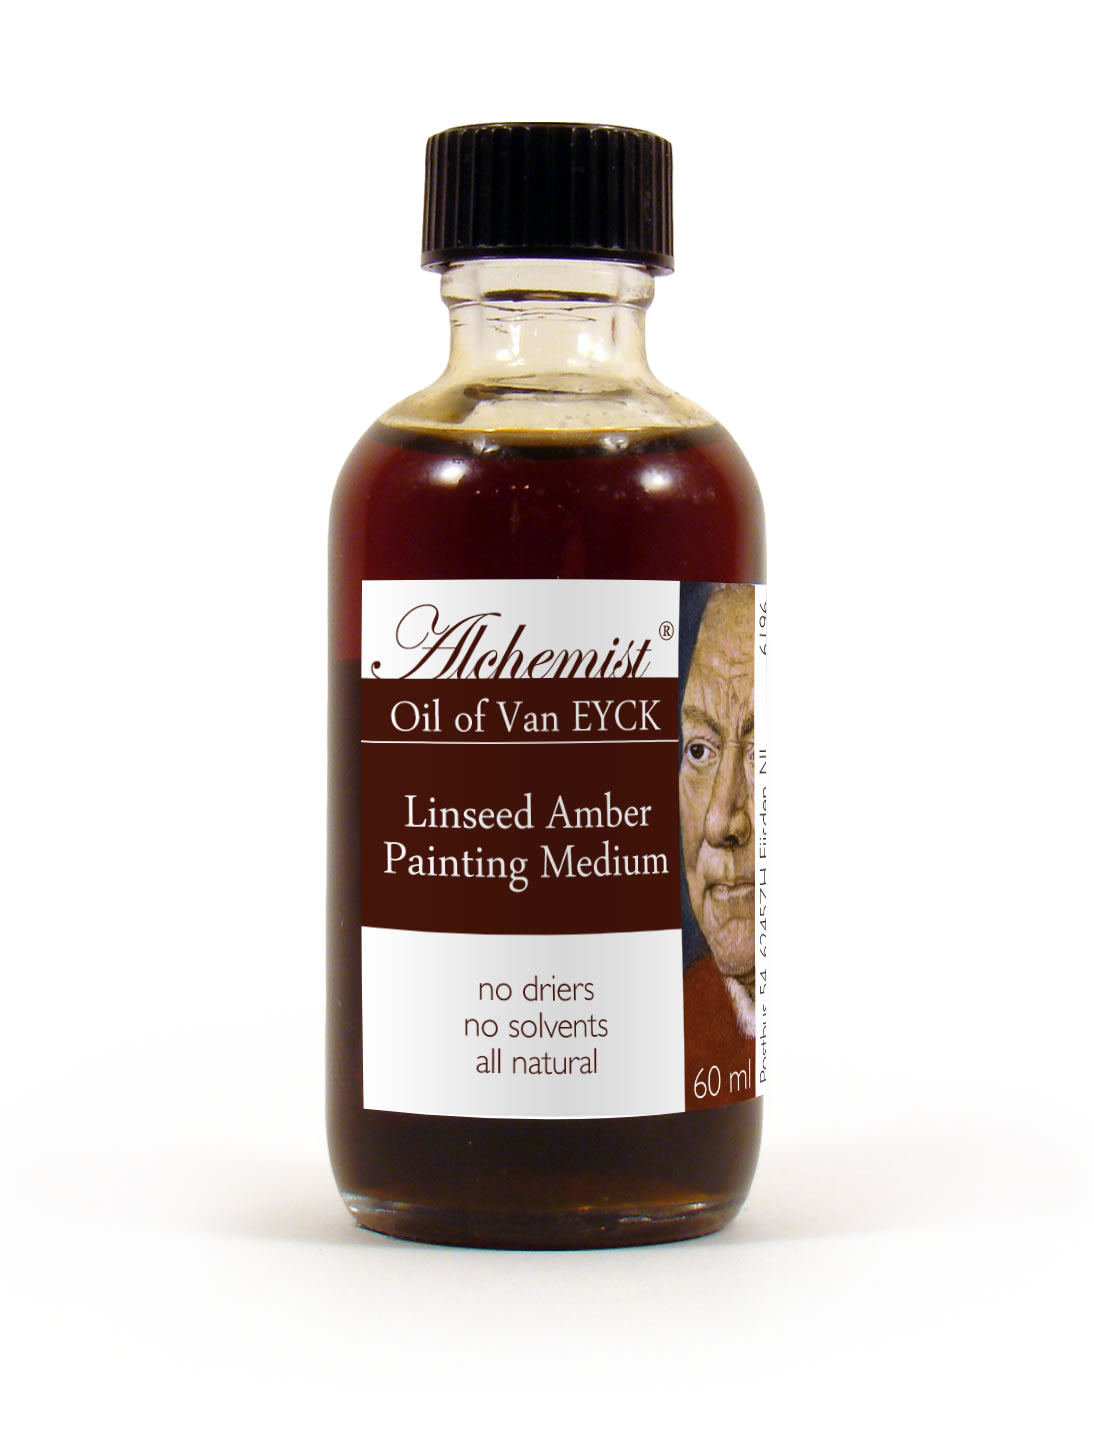 Oil of Van Eyck Linseed Amber Oil Painting Medium